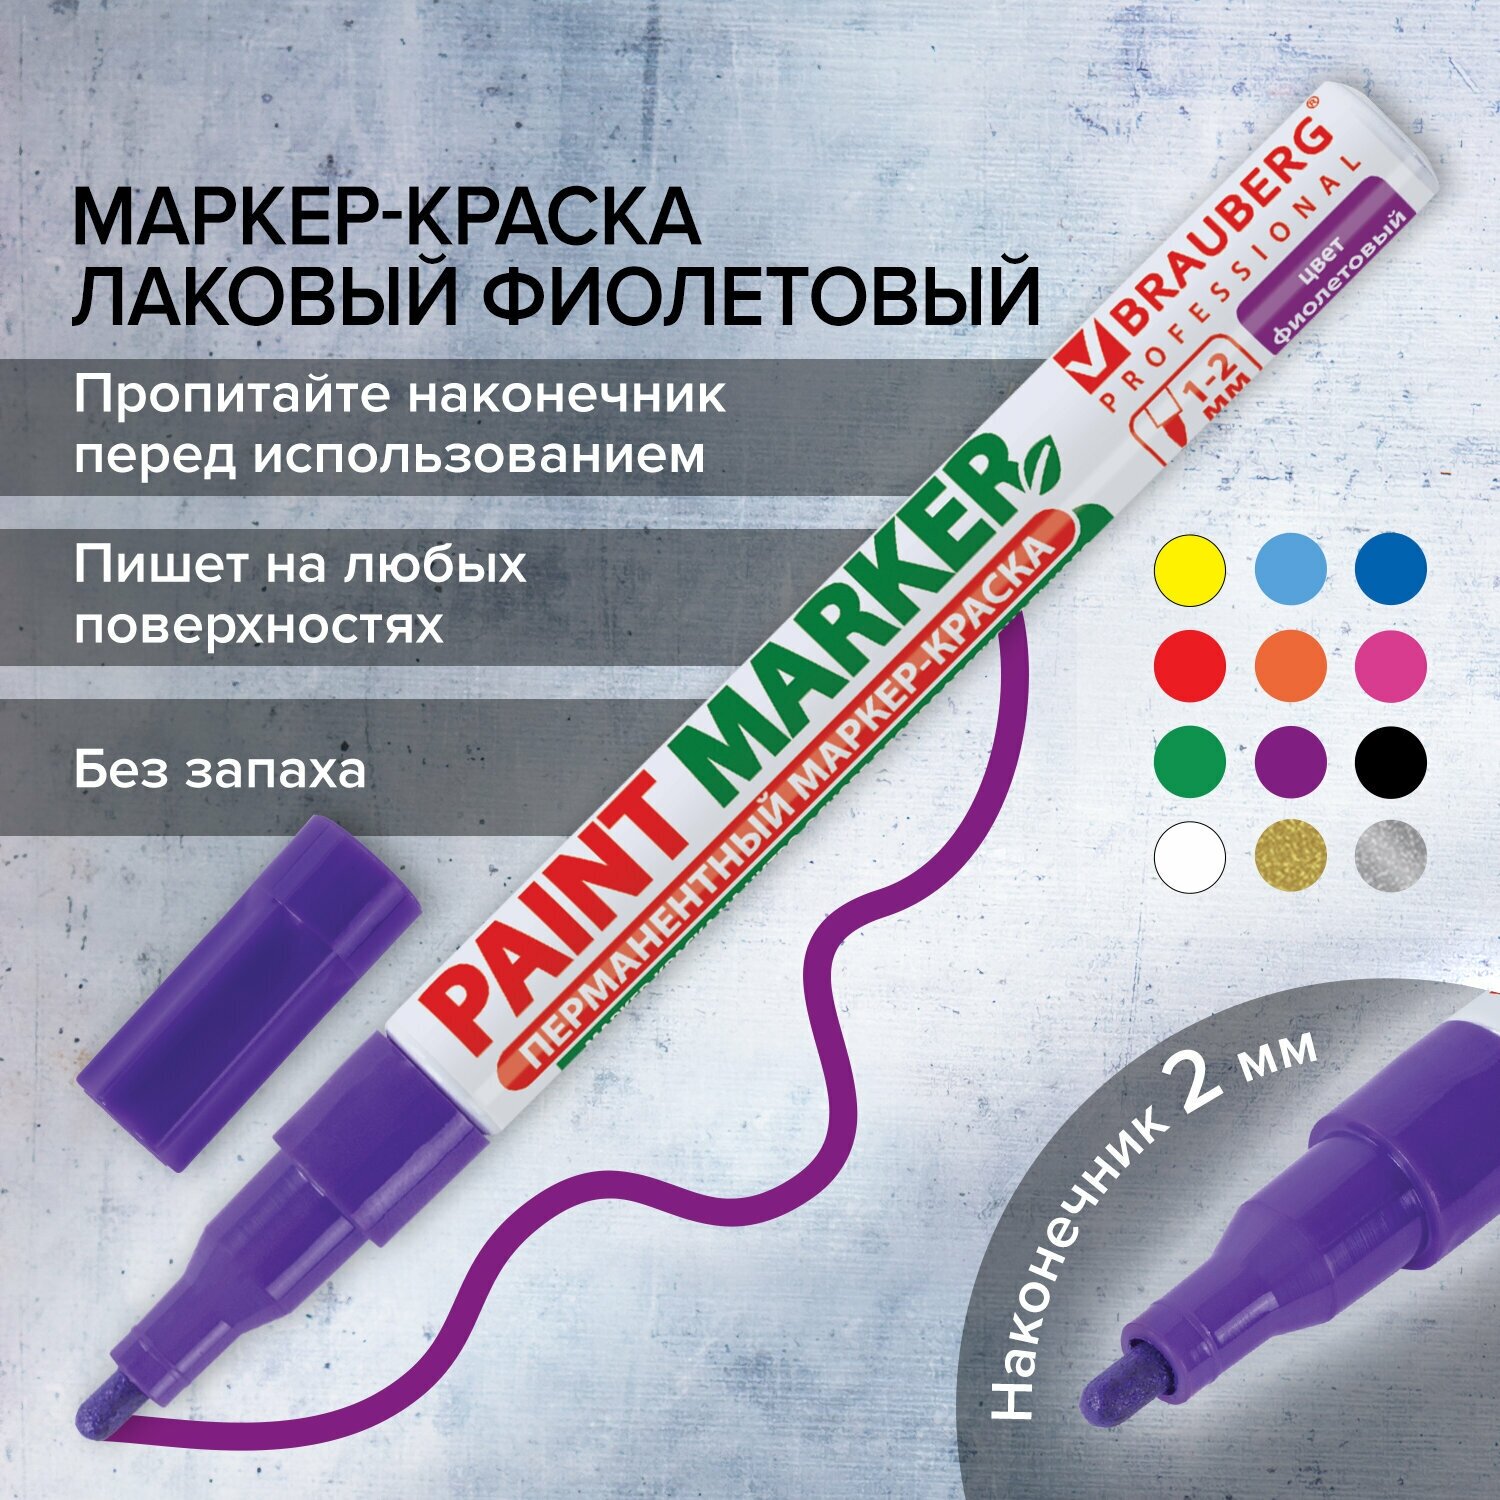 Маркер краска лаковый paint marker 2 мм строительный фиолетовый, фломастер, без запаха, алюминиевый корпус, Brauberg Proffessional, 150871